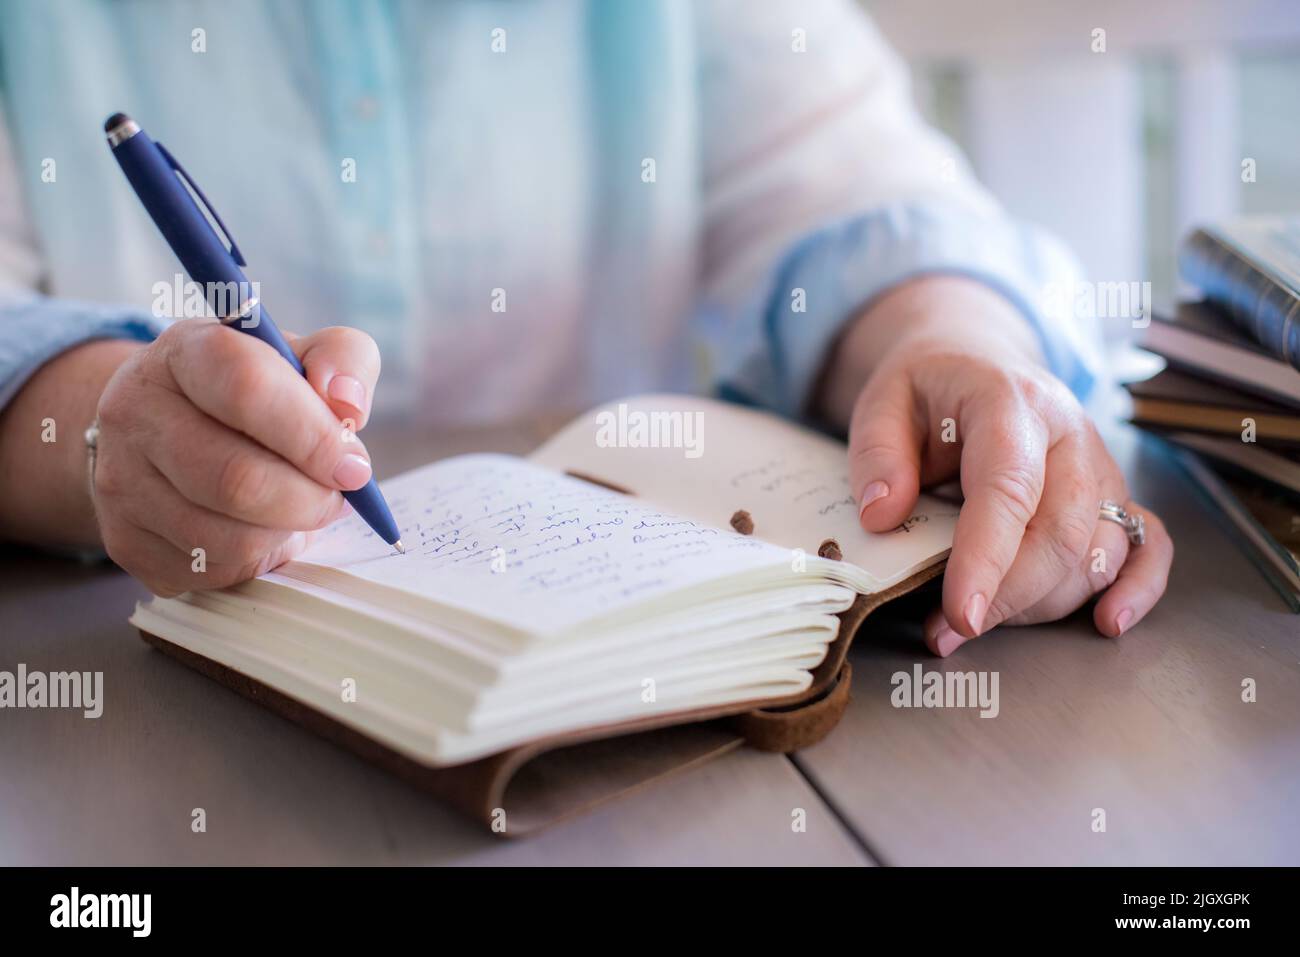 Gros plan des mains de la femme blanche écrivant dans un journal Banque D'Images